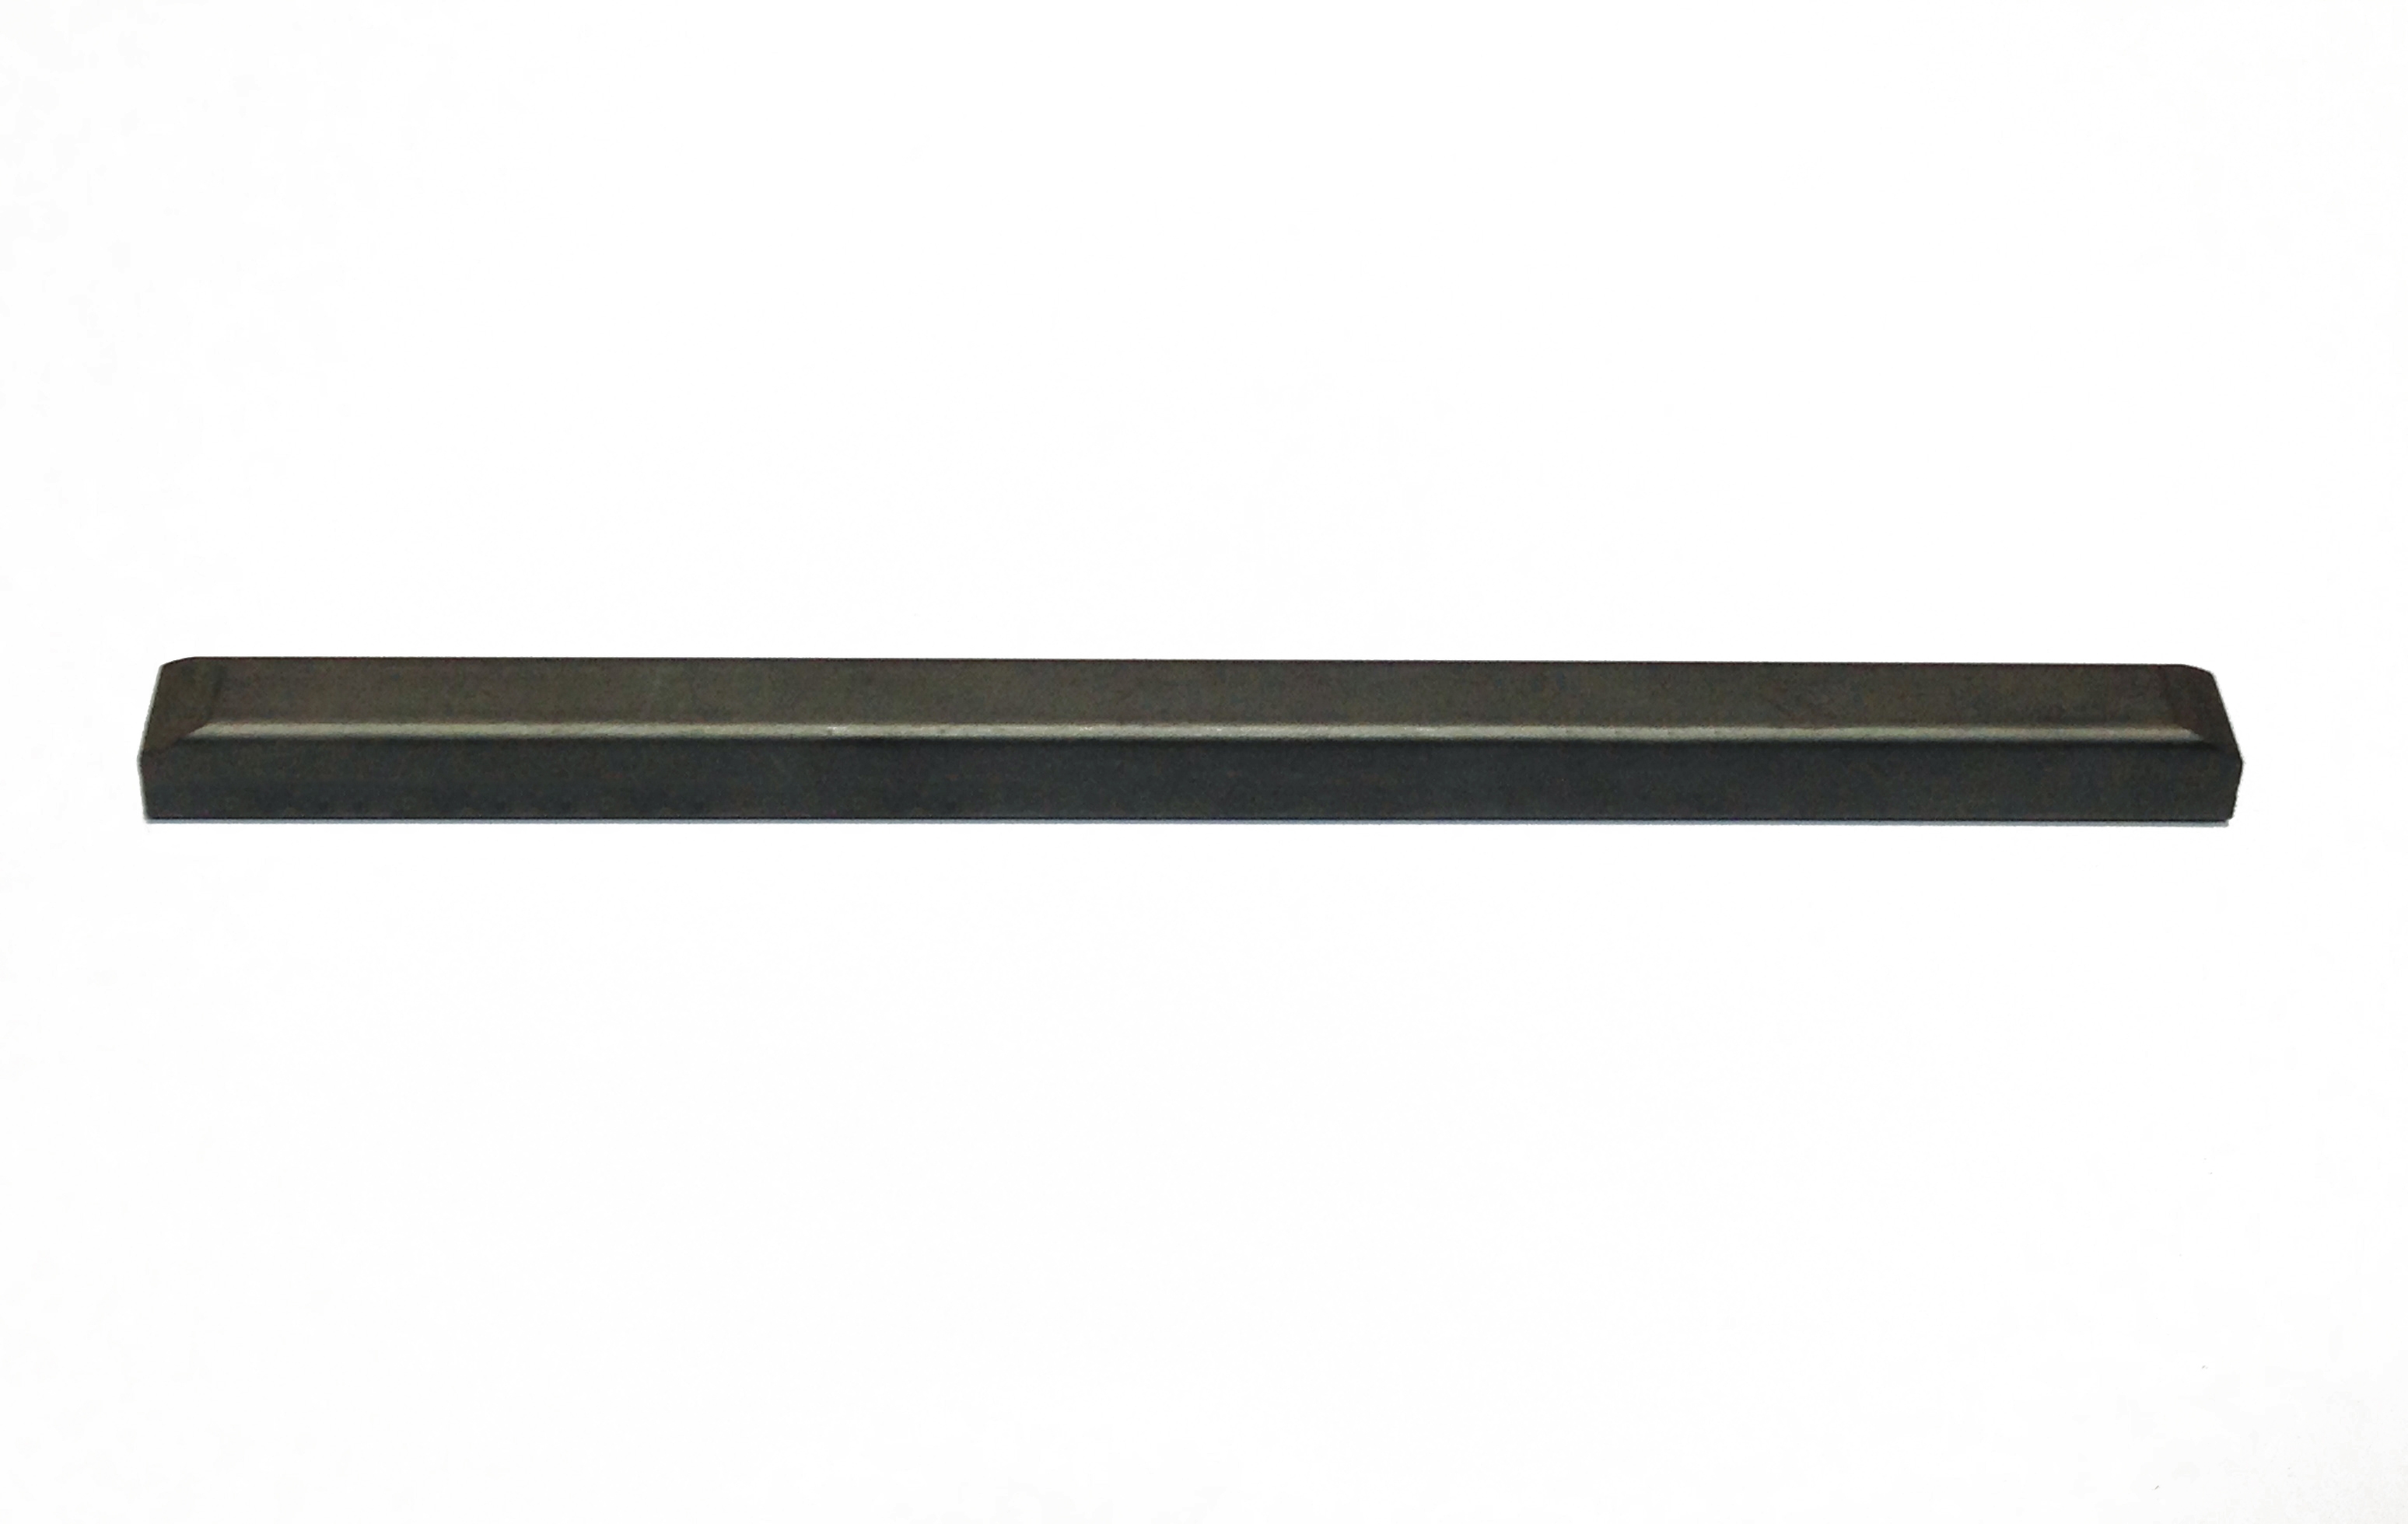 Graphite strip and graphite rail